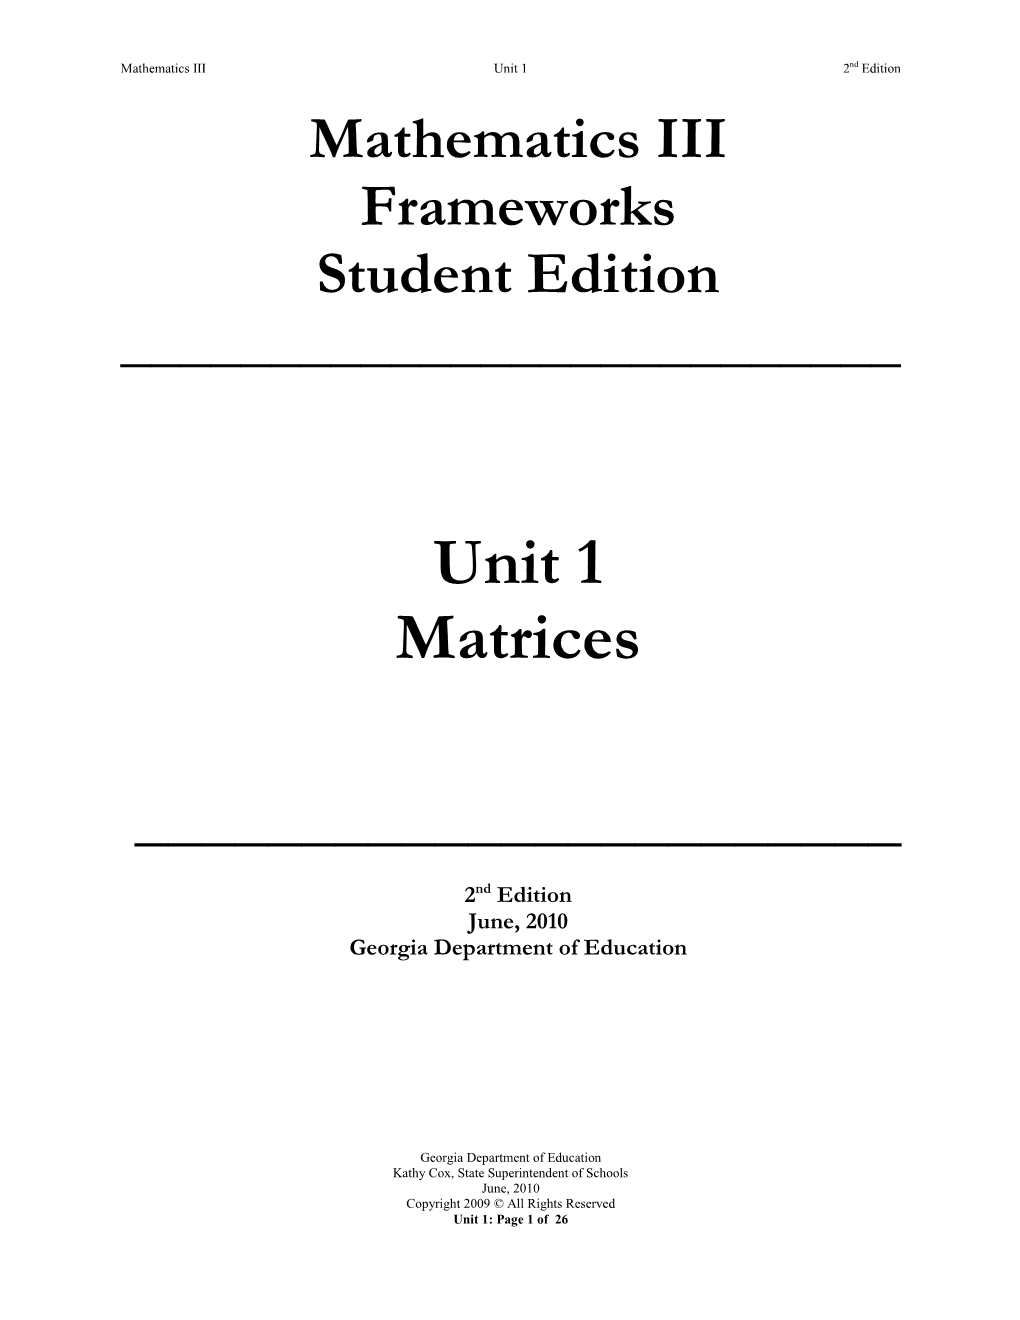 Unit 1 Matrices